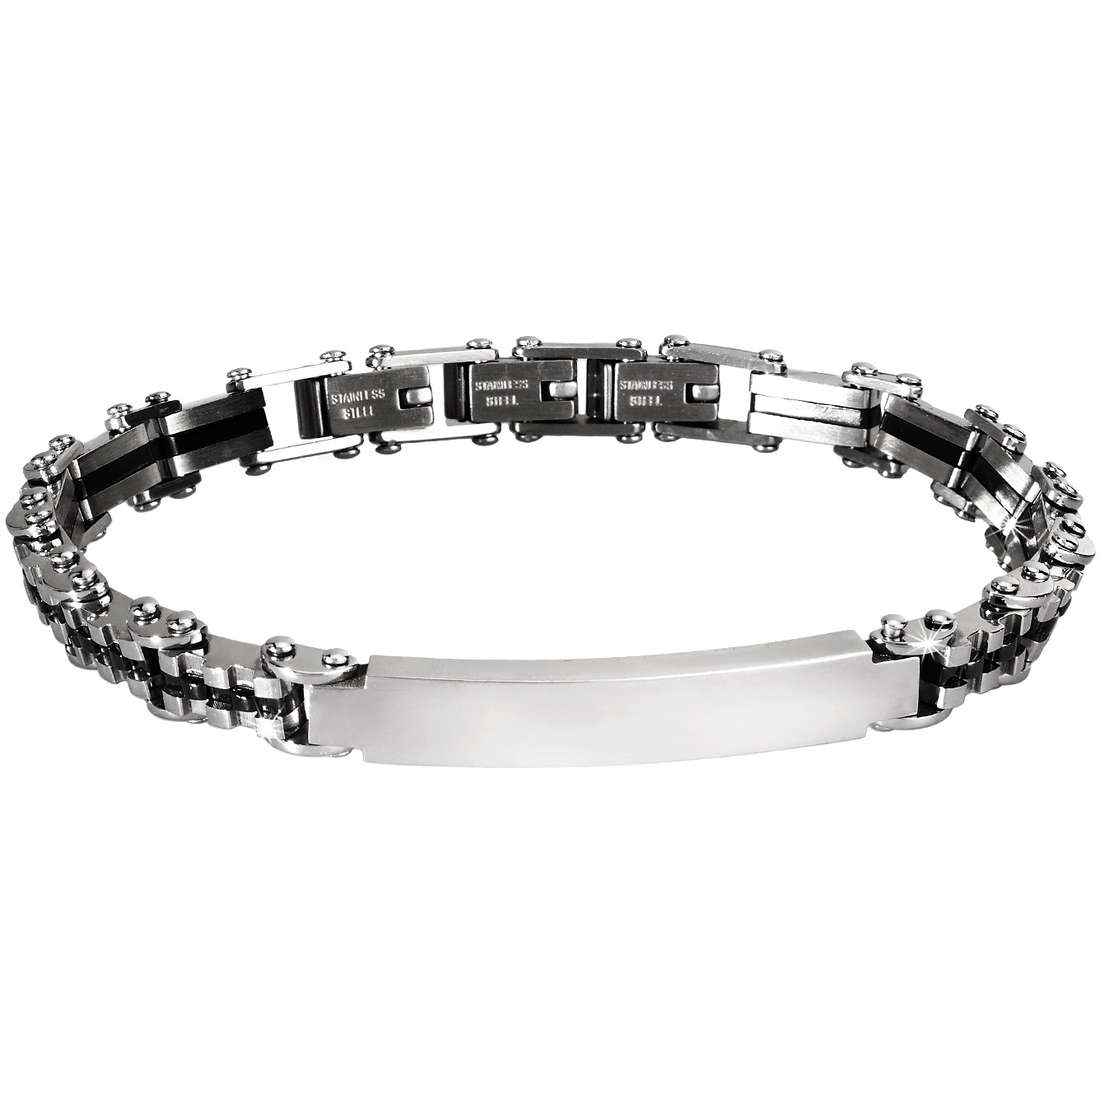 bracelet jewel Steel man jewel Type 231310